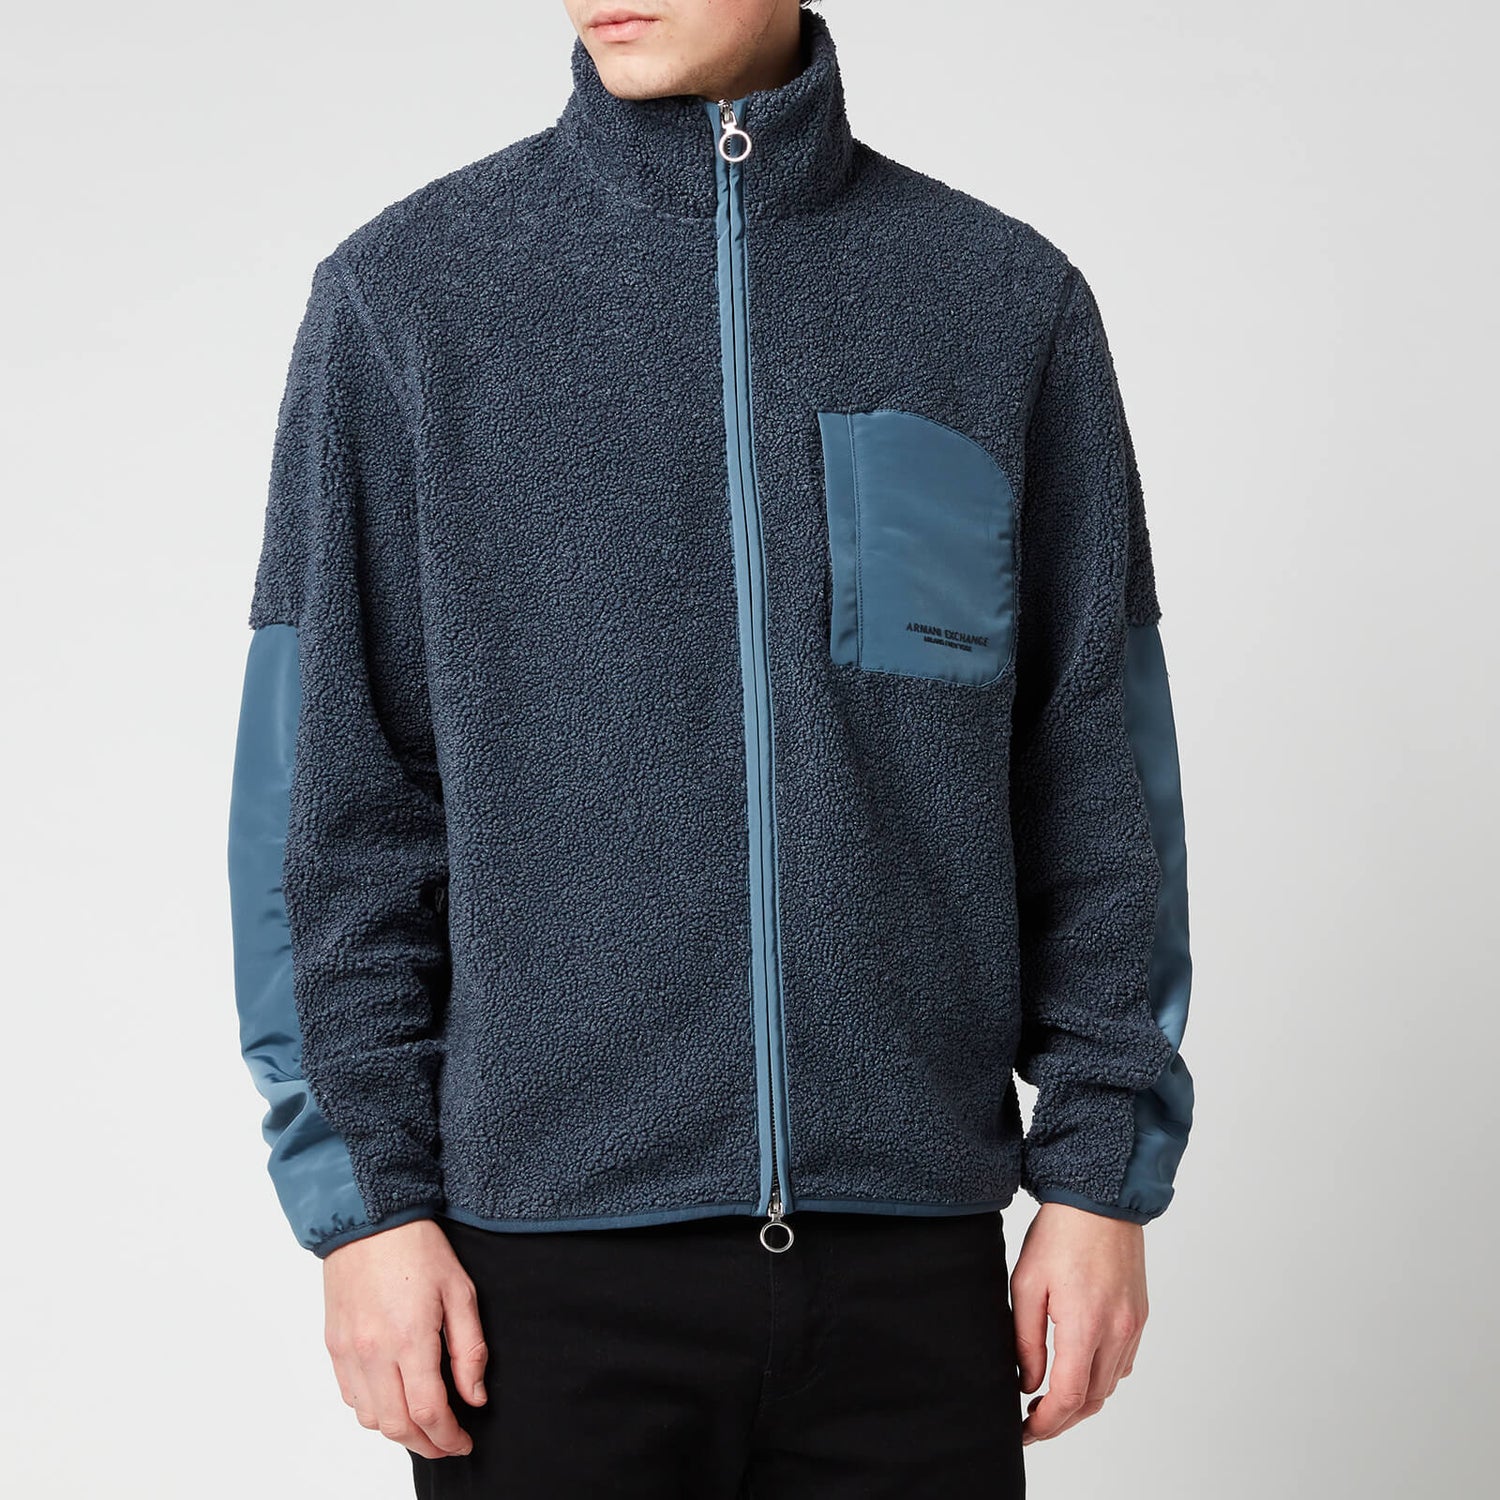 Armani Exchange Men's Fleece Zipped Jacket - Dusty Blue - L